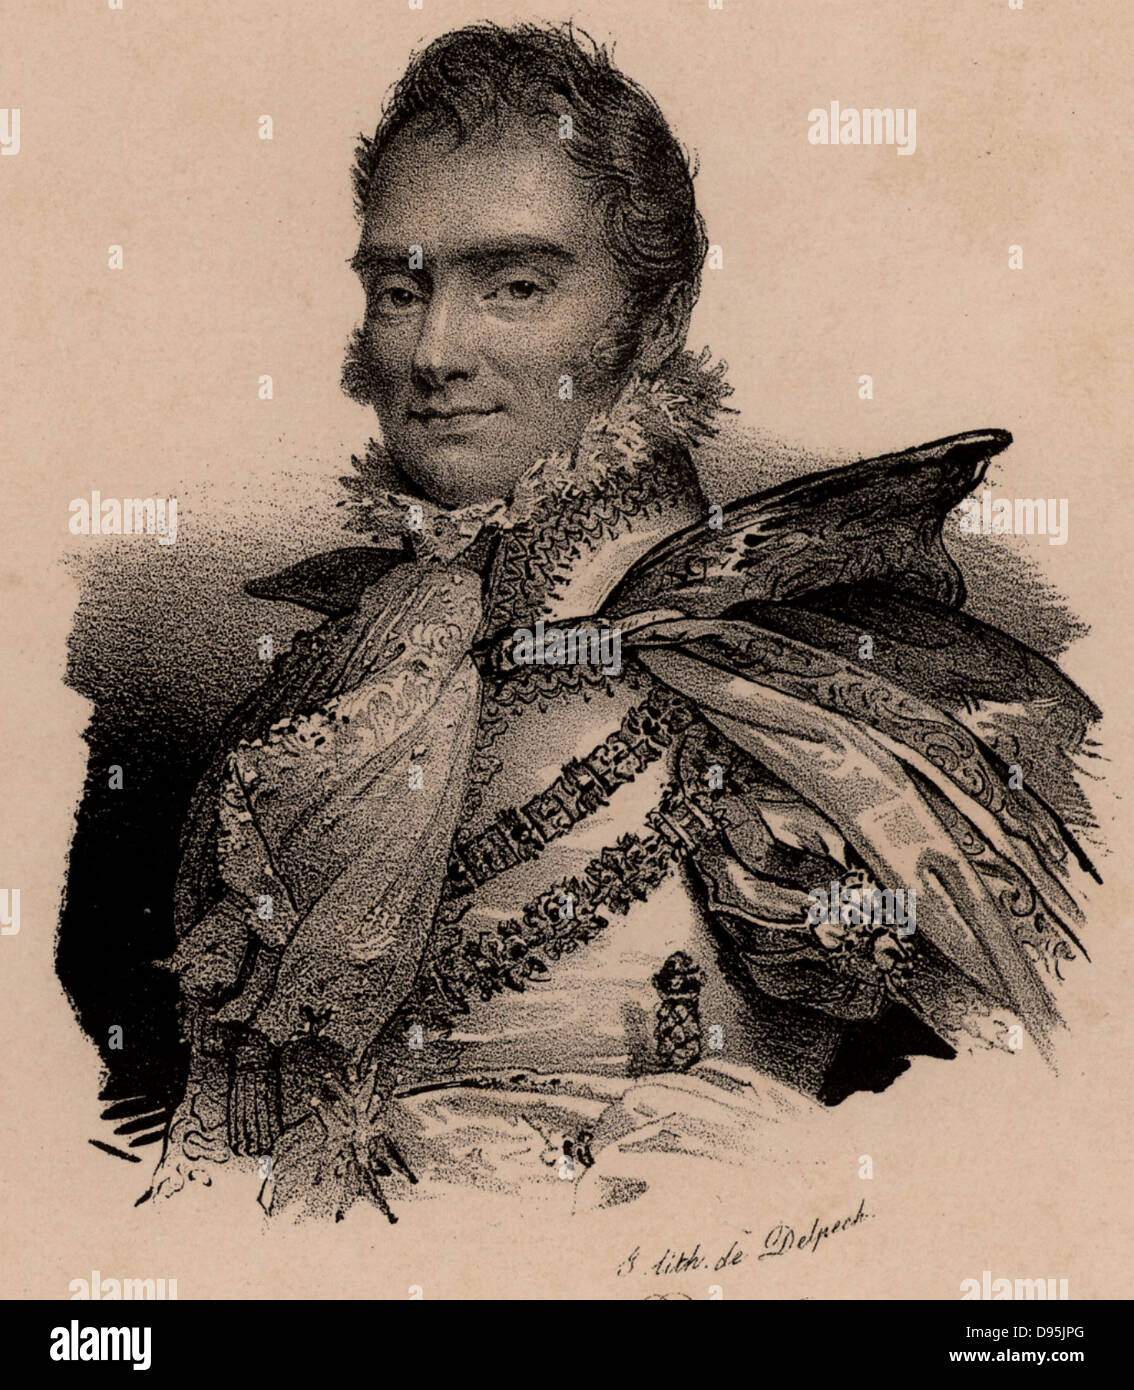 Charles Ferdinand, Duc de Berry (1778-1820), aristócrata francés; el segundo hijo de Carlos X de Francia; asesinado por Bonapartist fanático. Litografía c1830. Foto de stock